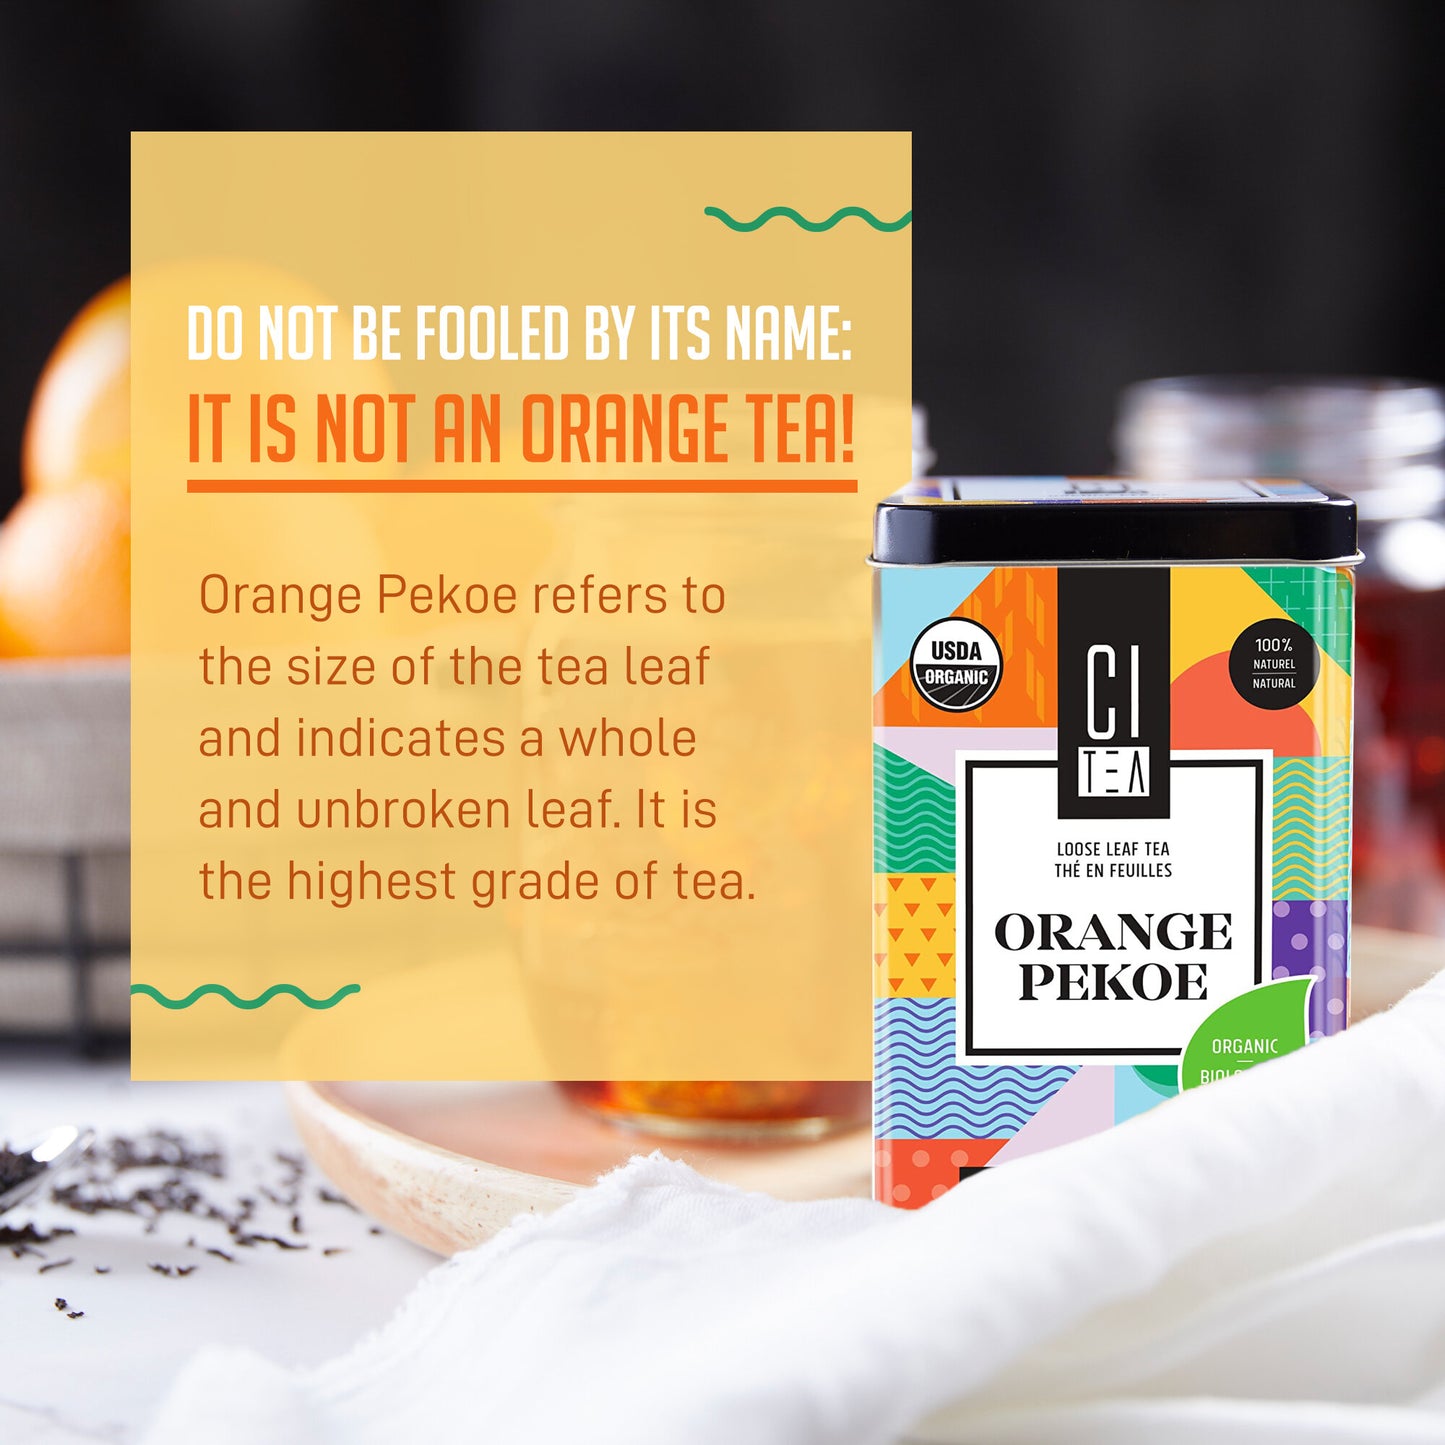 Organic Orange Pekoe Black Loose Leaf Tea with Teaball - 80g